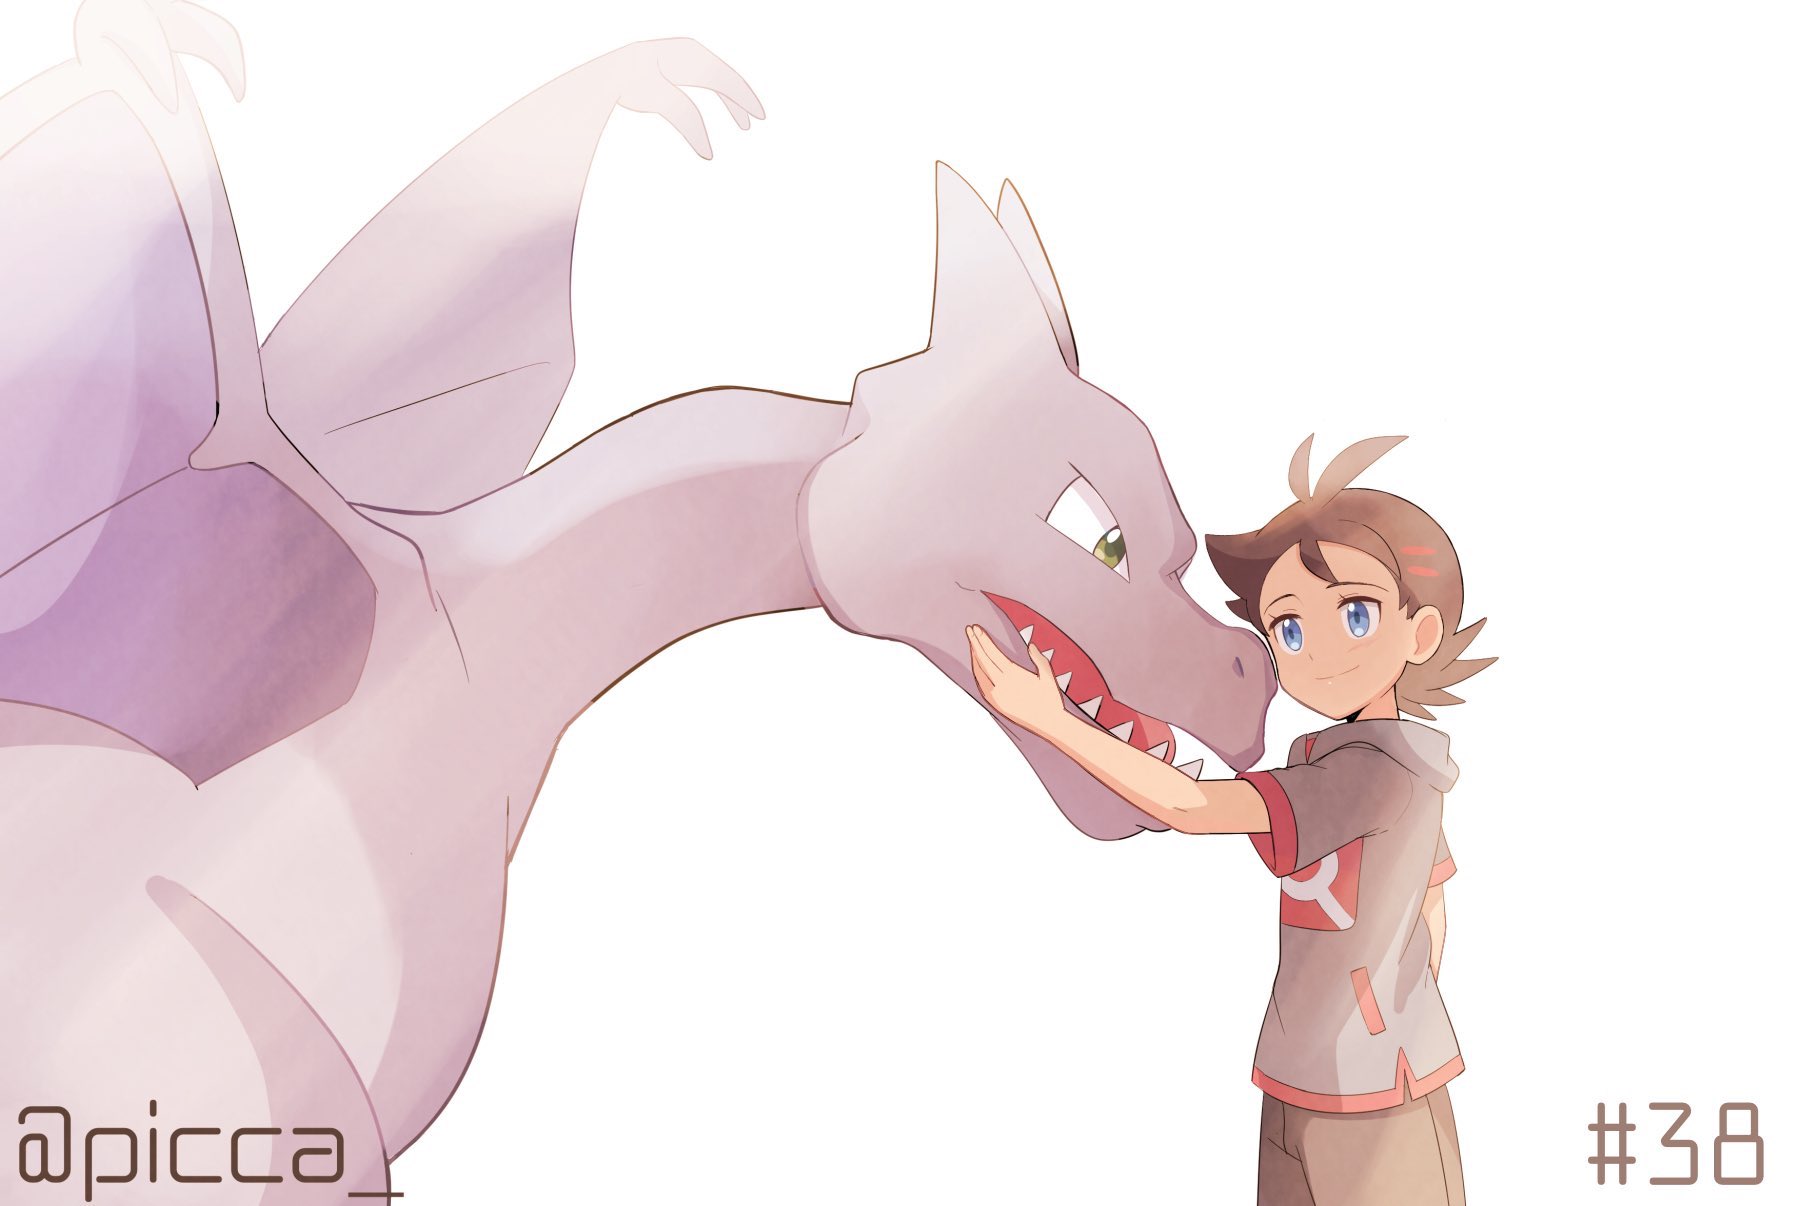 Anime Pokémon Art by picca_